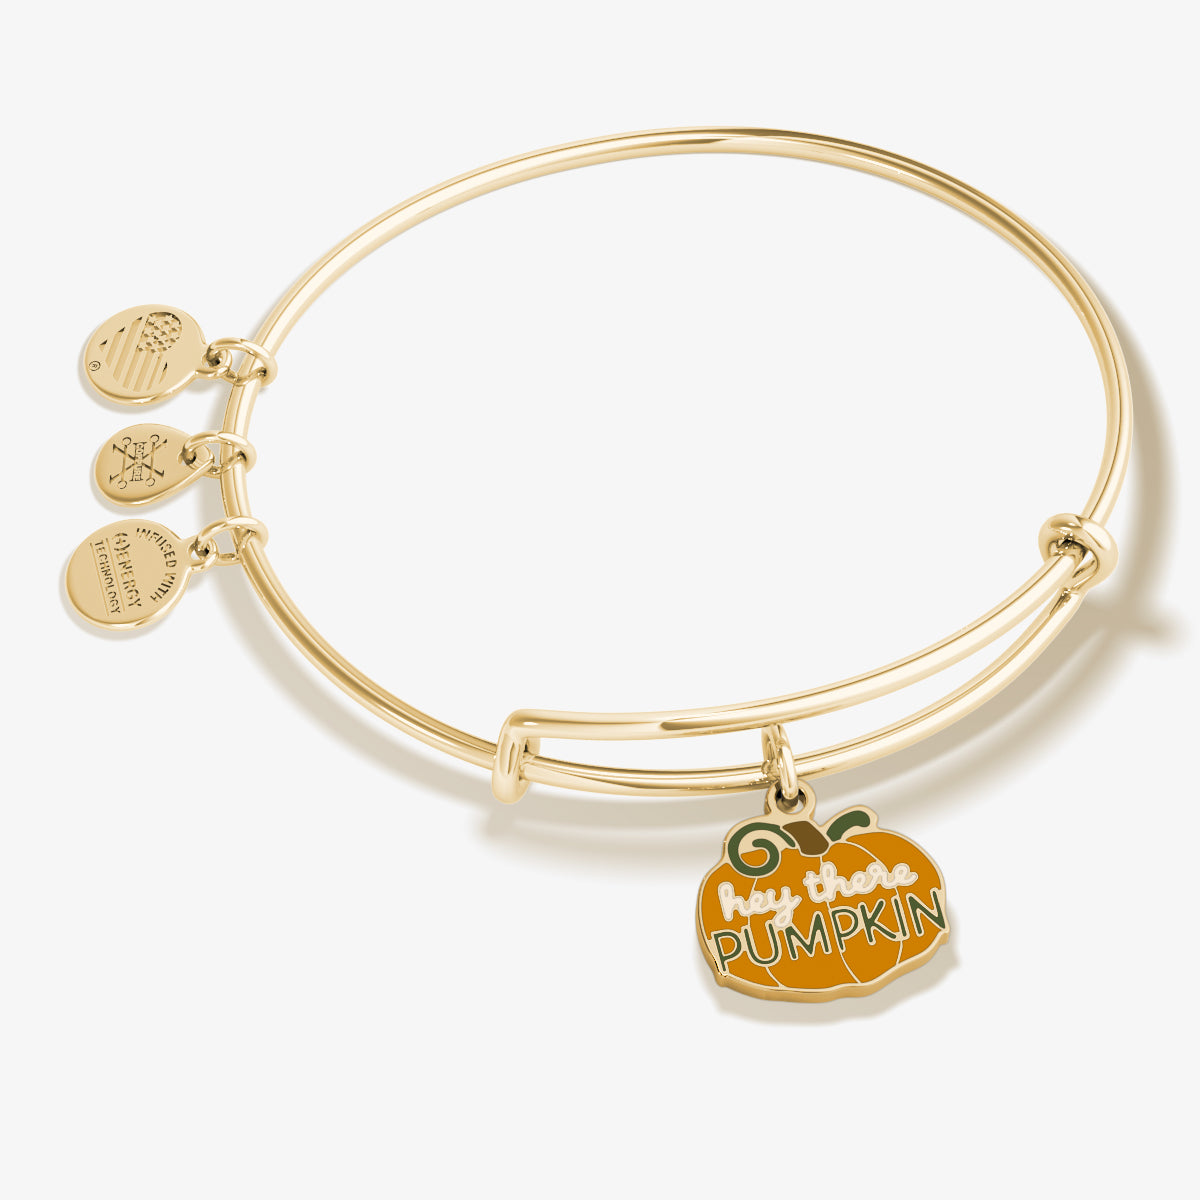 'Hey There Pumpkin' Charm Bangle Bracelet